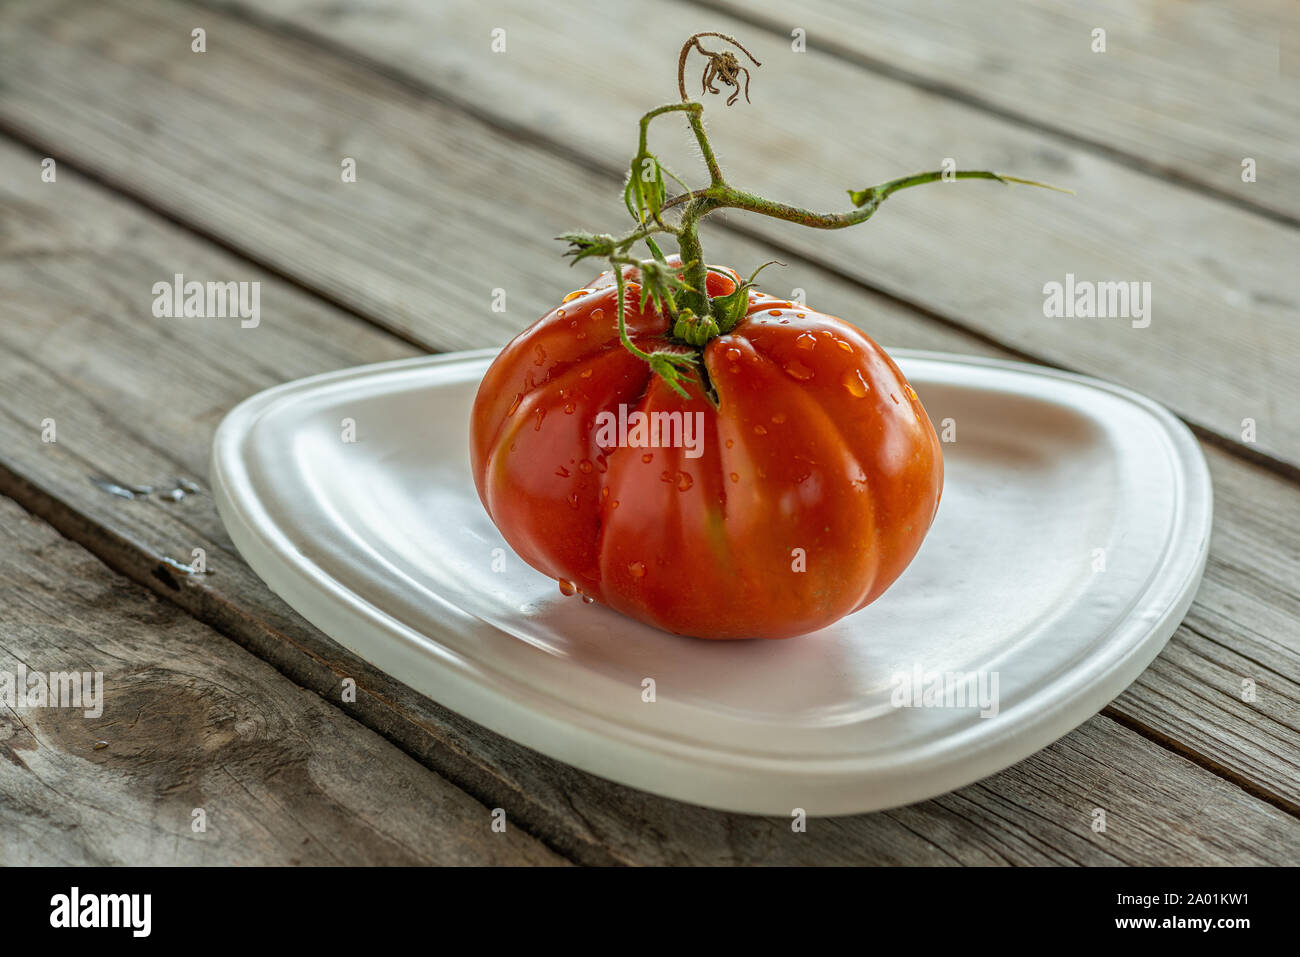 Les tomates coeur de boeuf sur la table Banque D'Images